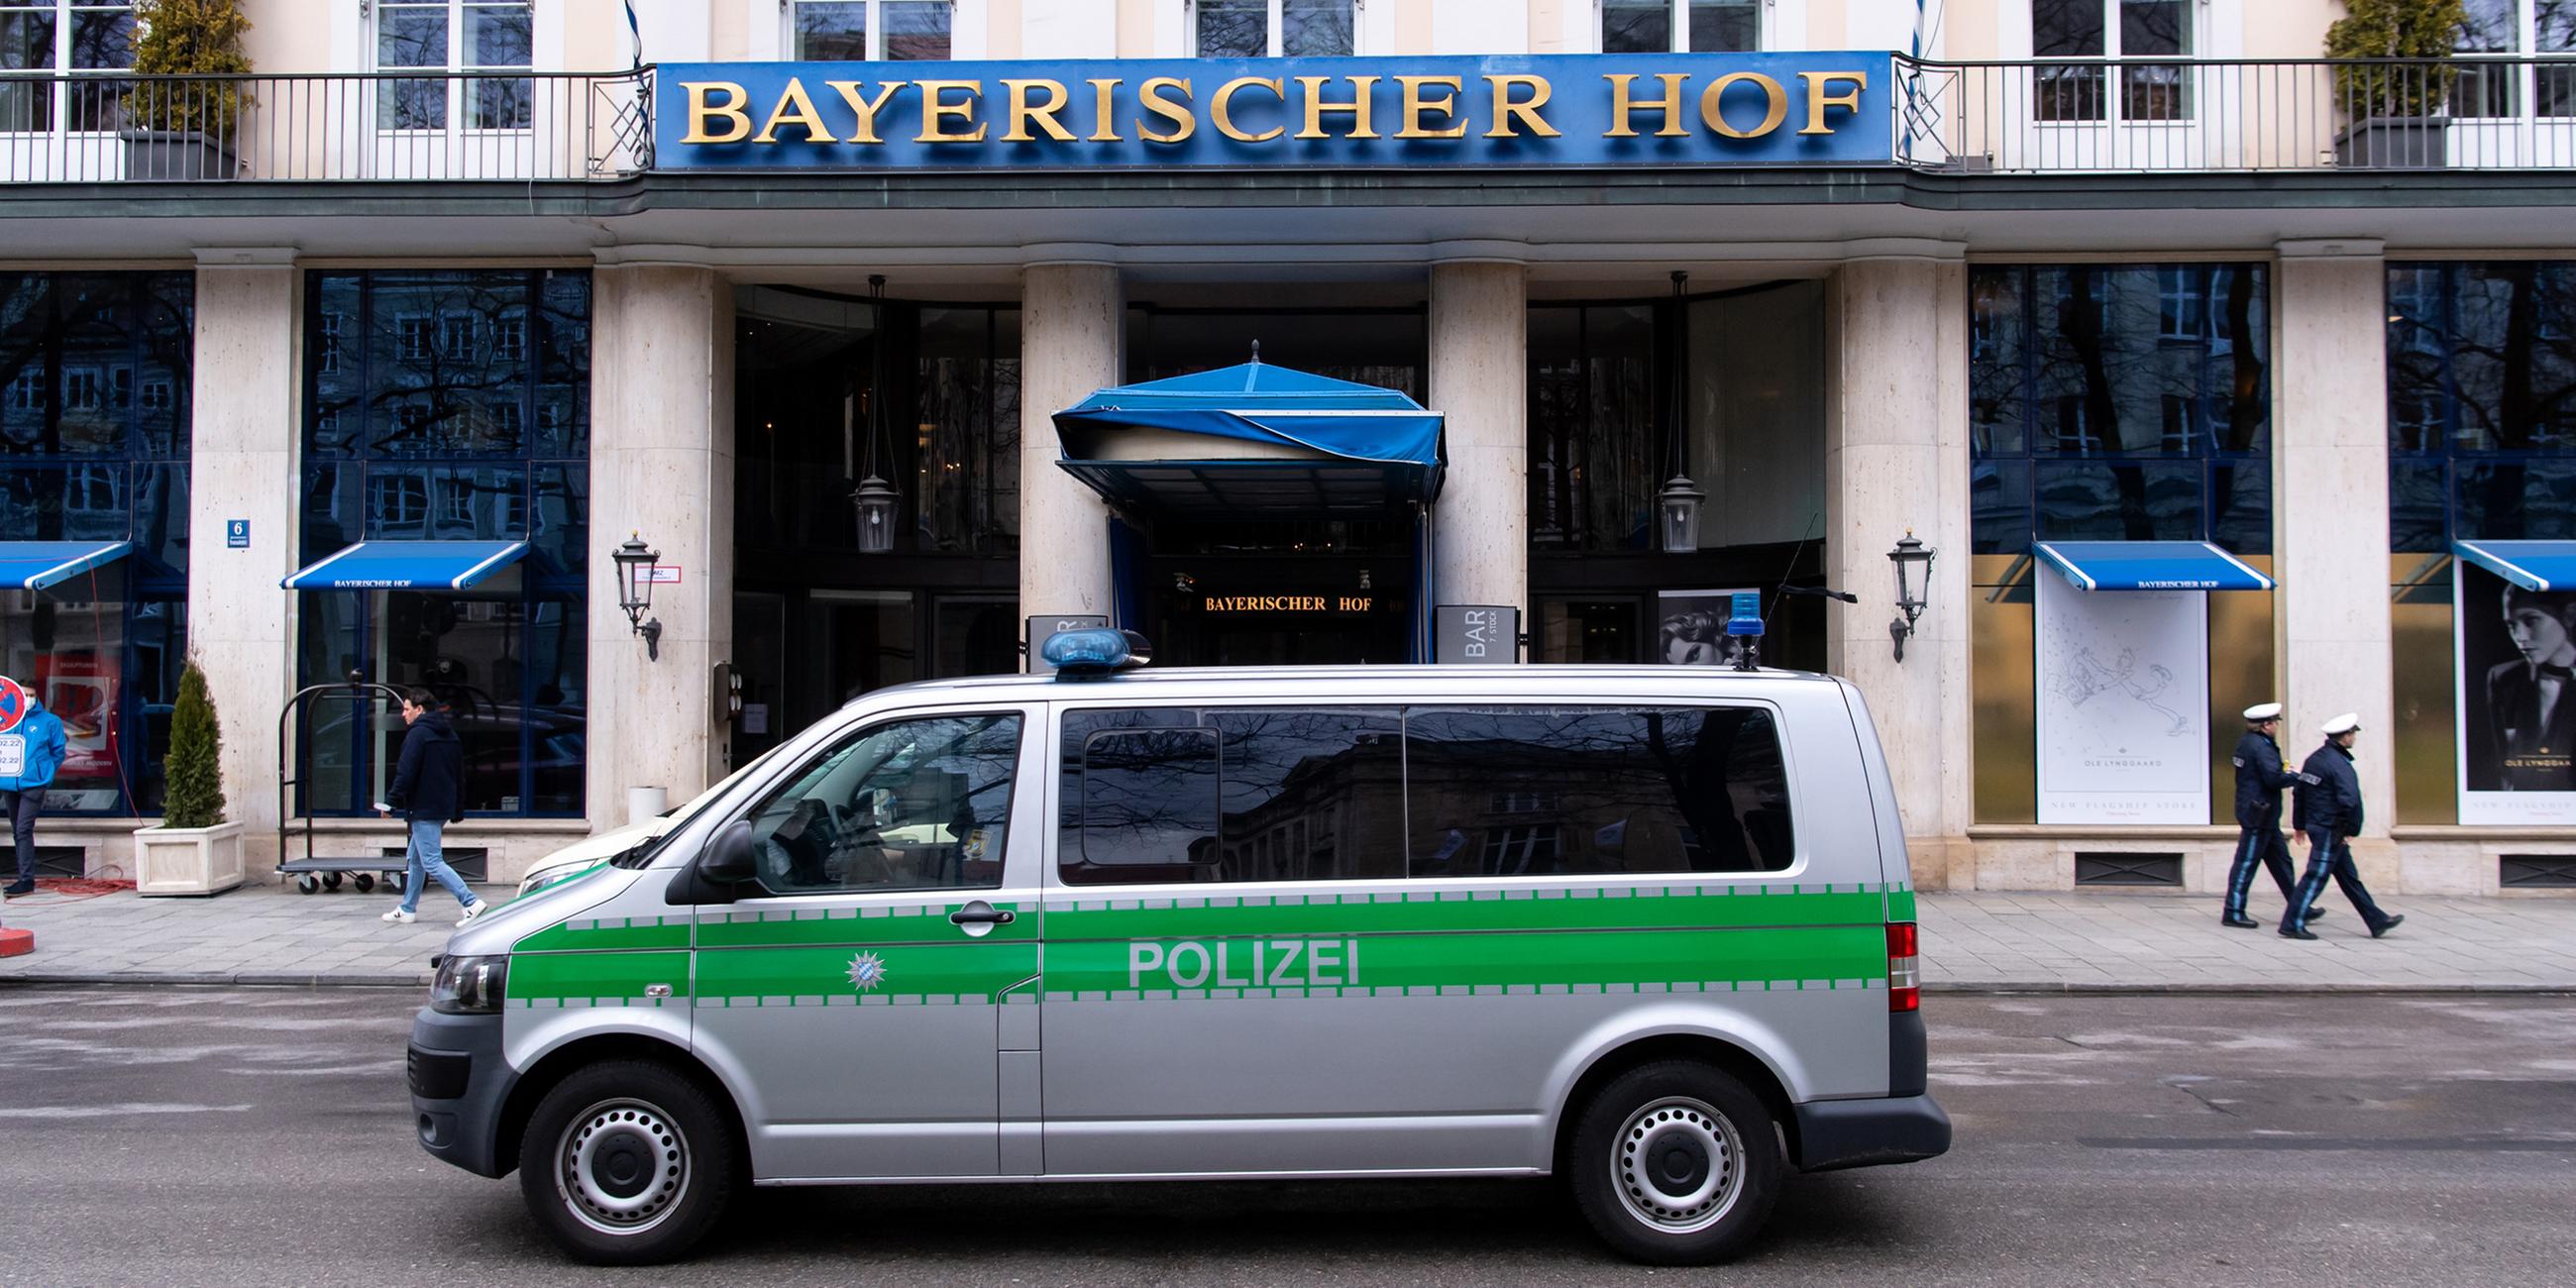 Ein Polizeiauto fährt vor dem Hotel "Bayerischer Hof" entlang.